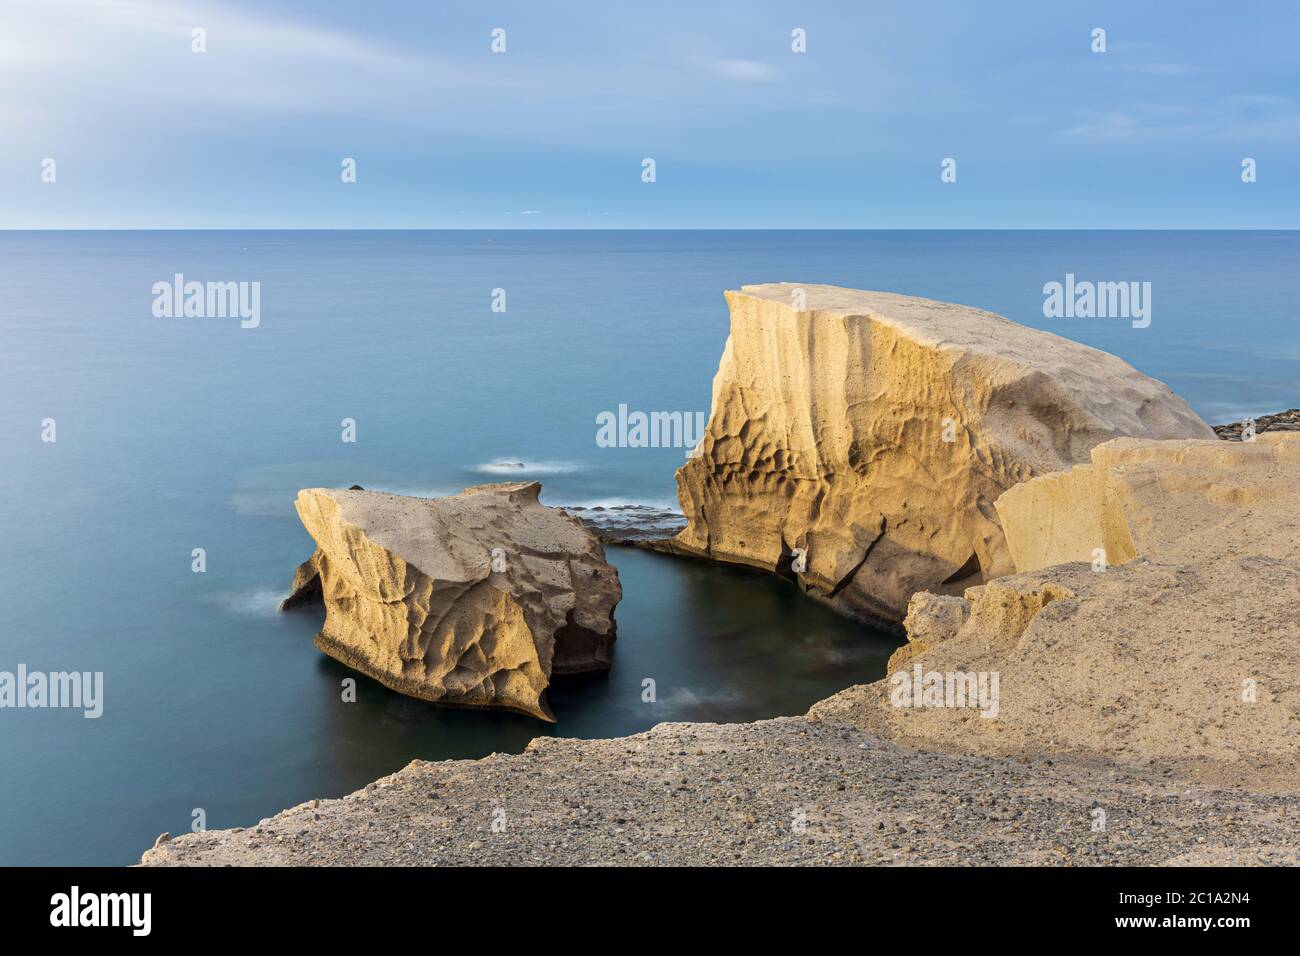 Fotografía de larga exposición con rocas de color arena en el océano atlántico en la costa por Tajao, Tenerife, Islas Canarias, España Foto de stock